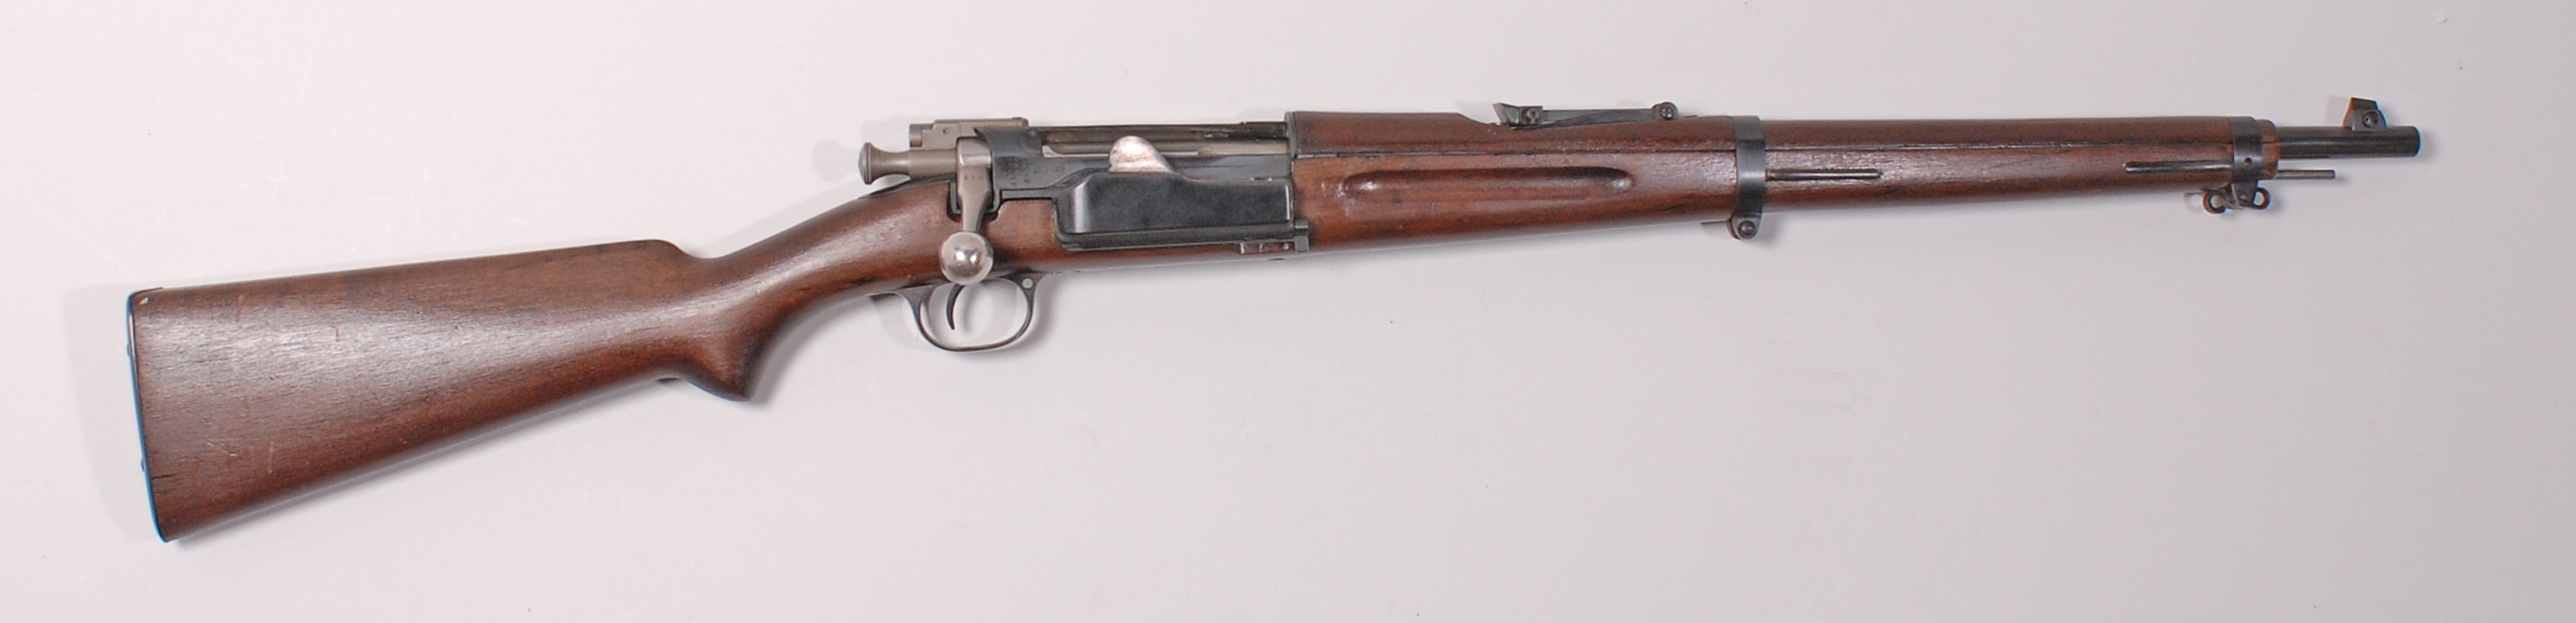 ./guns/rifle/bilder/Rifle-Kongsberg-Krag-M1904-10031-1.jpg